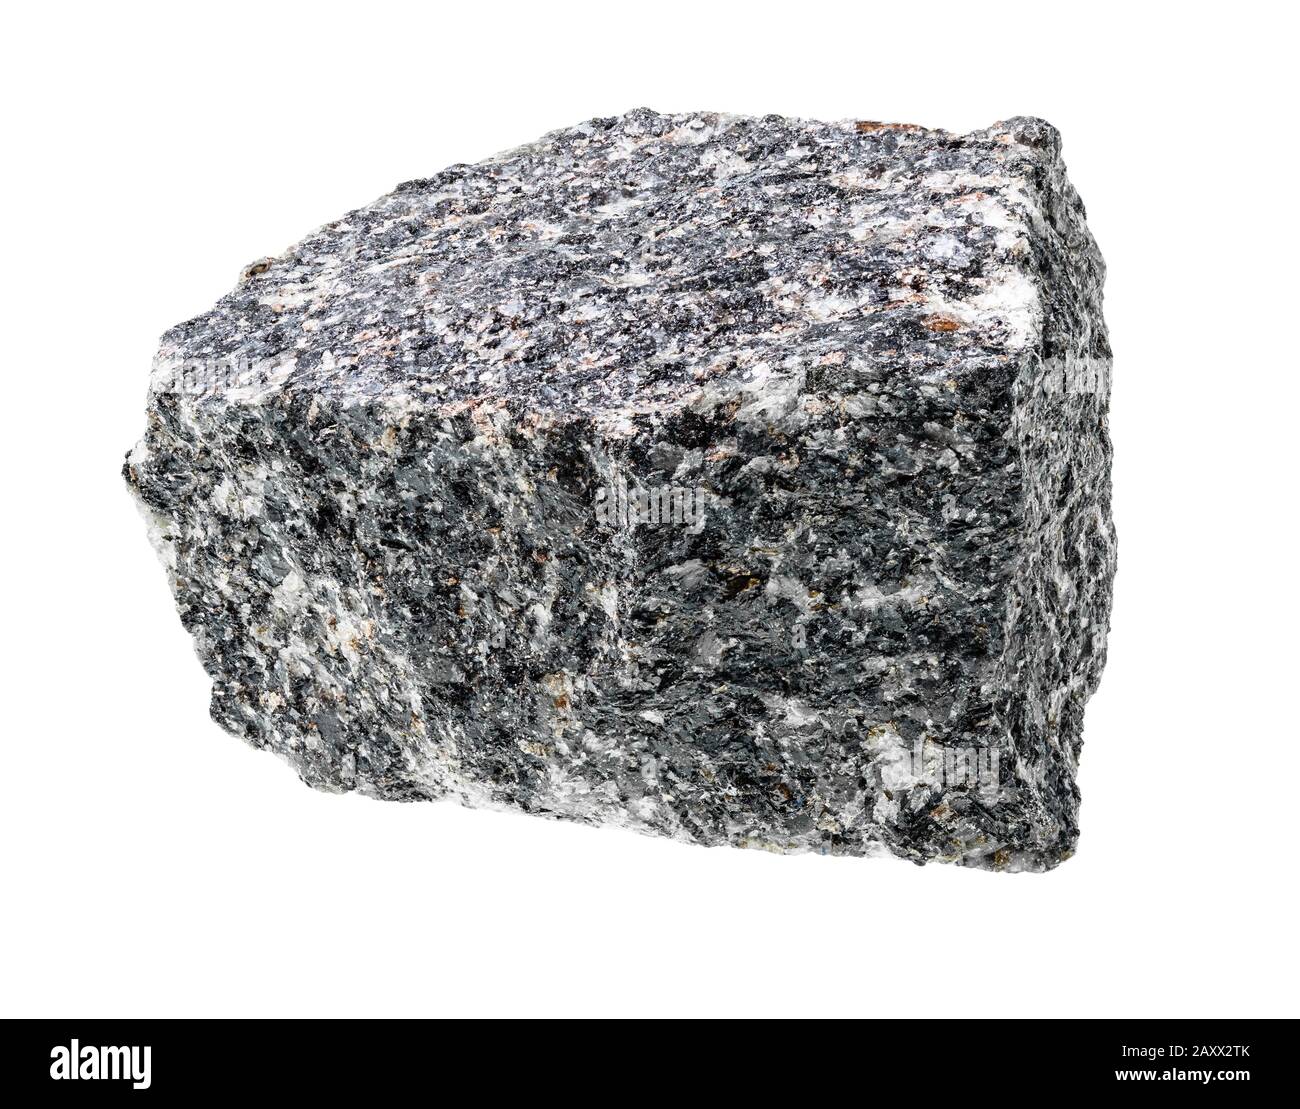 Unpolierter Nephelin Syenite Rock Ausschnitt auf weißem Hintergrund Stockfoto